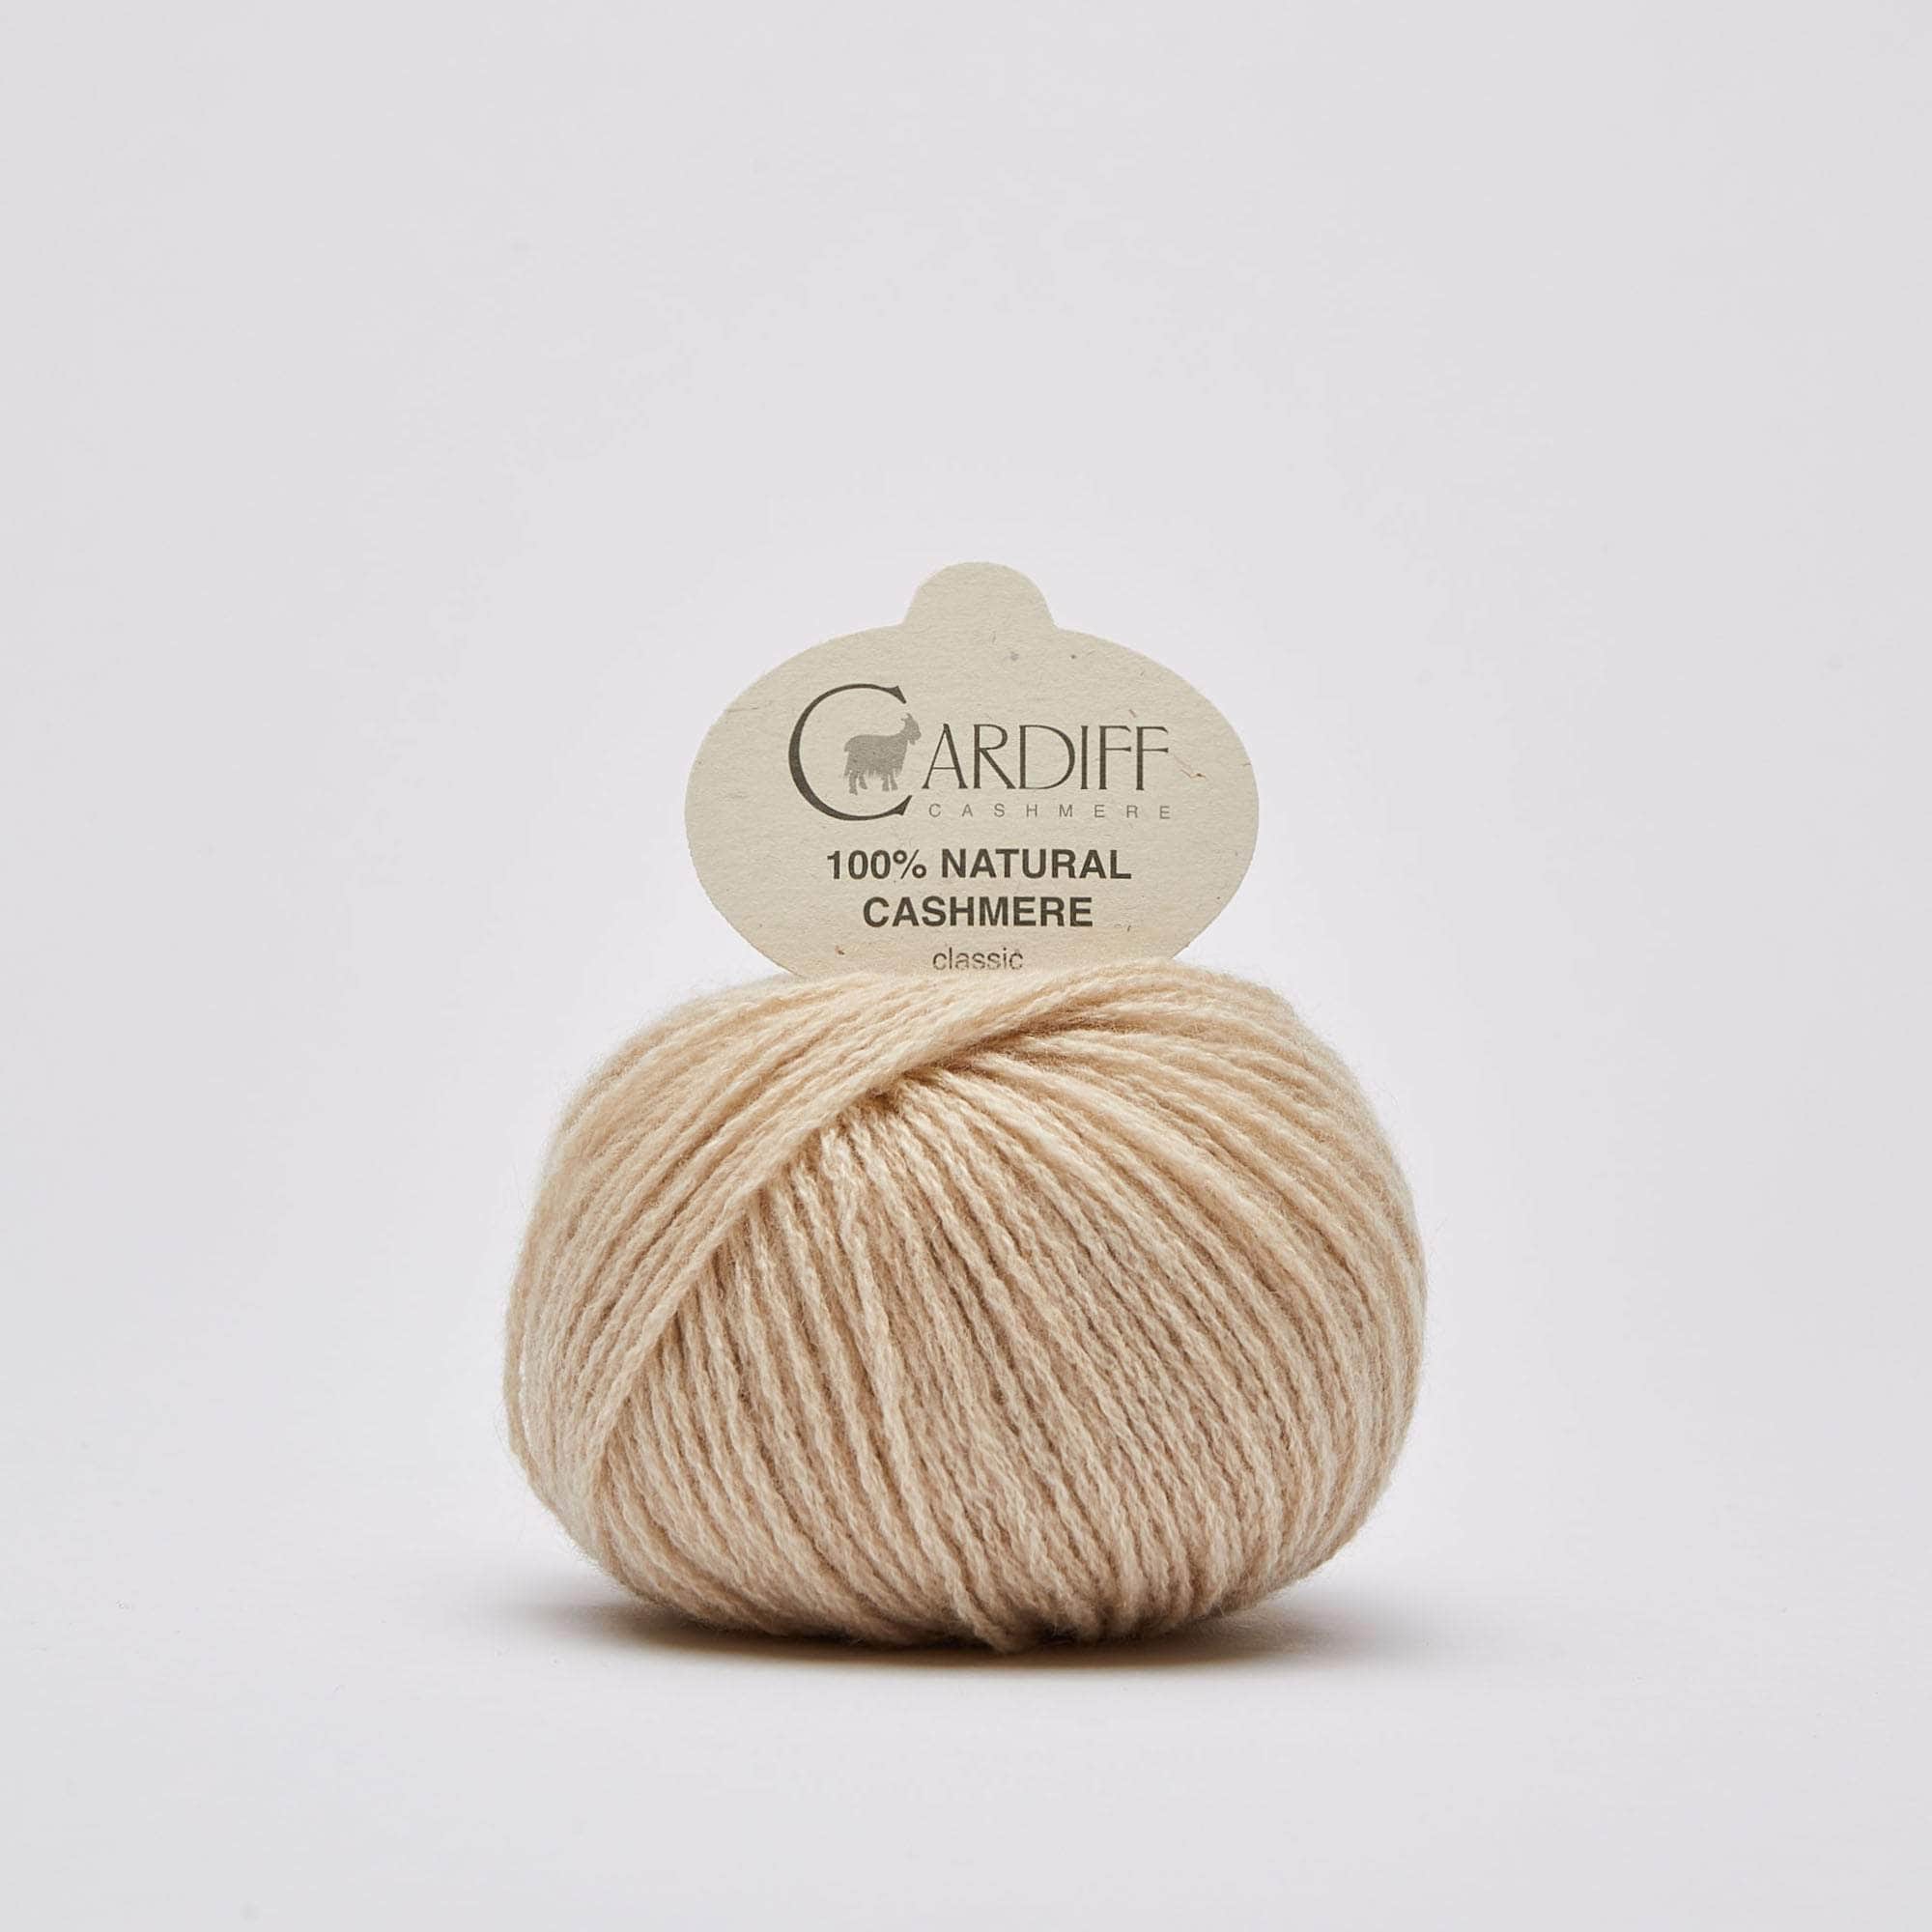 Cashmere Classic von CARDIFF CASHMERE jetzt online kaufen bei OONIQUE